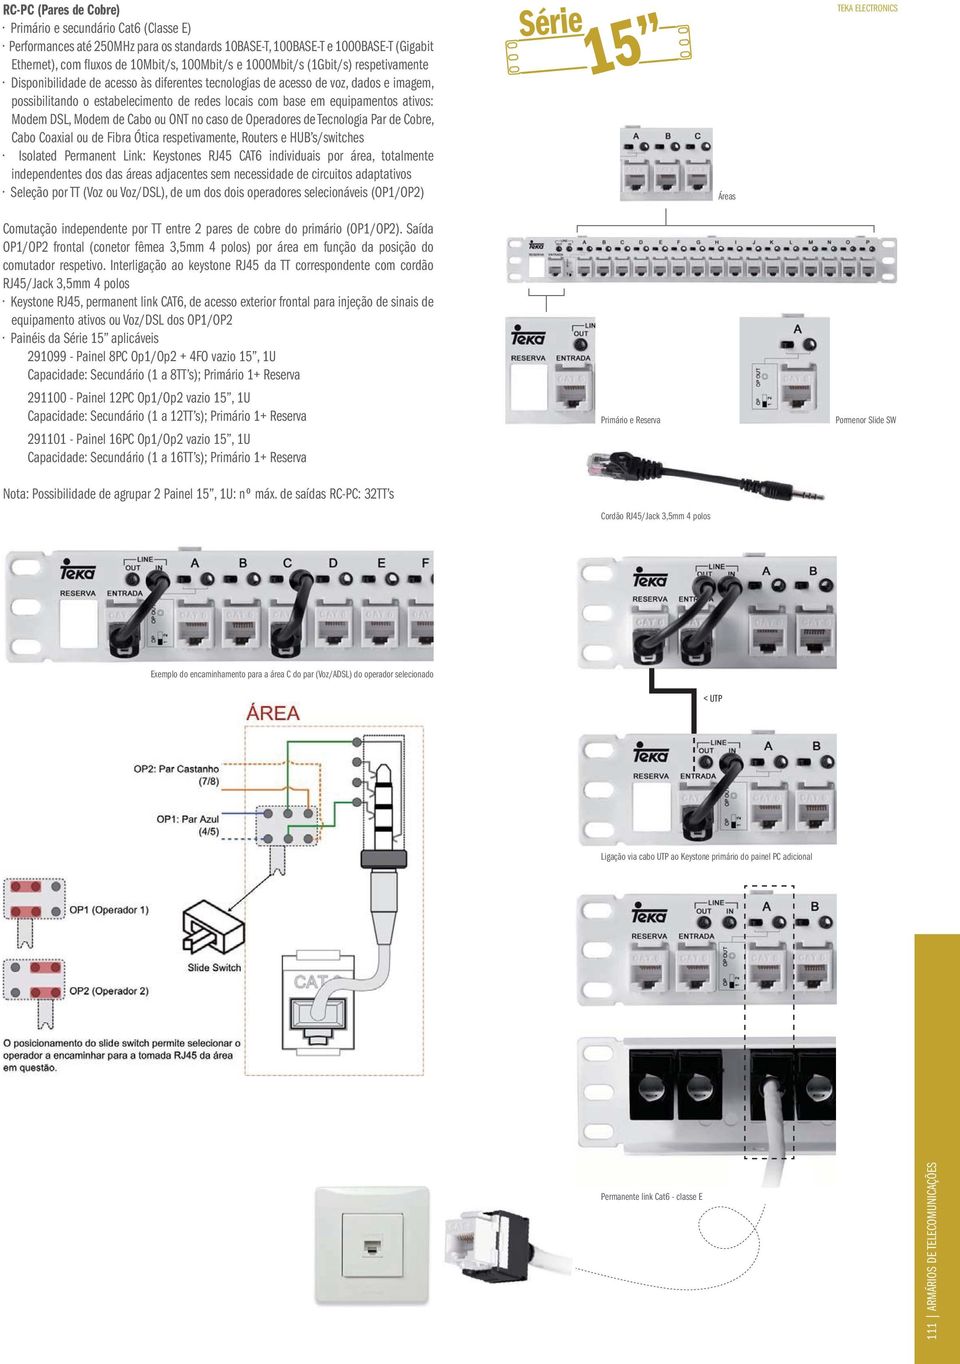 ativos: Modem DSL, Modem de Cabo ou ONT no caso de Operadores de Tecnologia Par de Cobre, Cabo Coaxial ou de Fibra Ótica respetivamente, Routers e HUB s/switches Isolated Permanent Link: Keystones